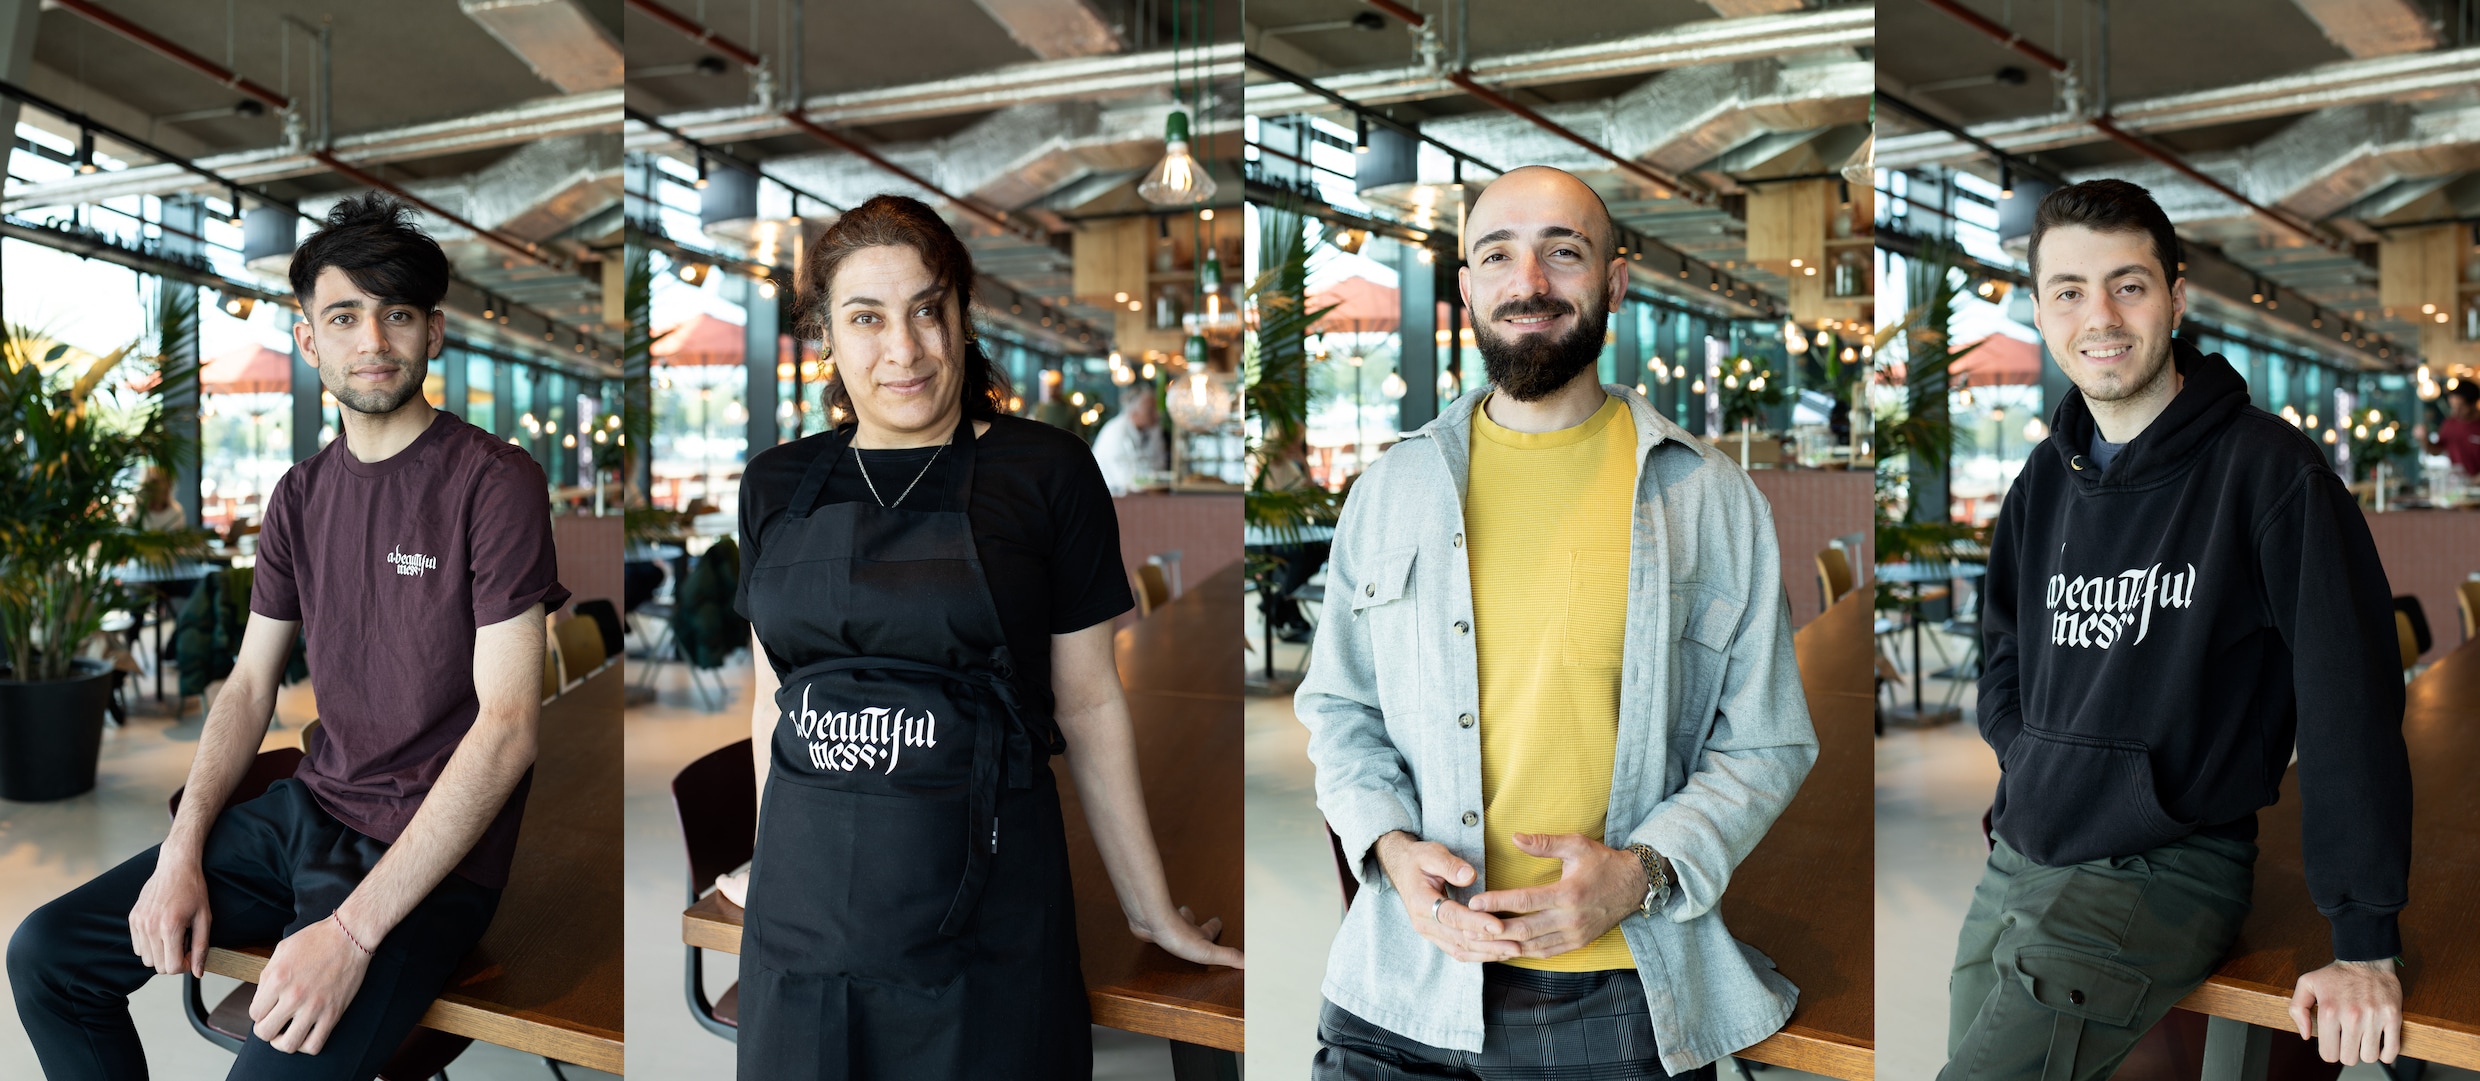 Bij dit restaurant doen vluchtelingen werkervaring op (en ze hebben een gloednieuwe locatie): ‘Ik droom van een eigen café’